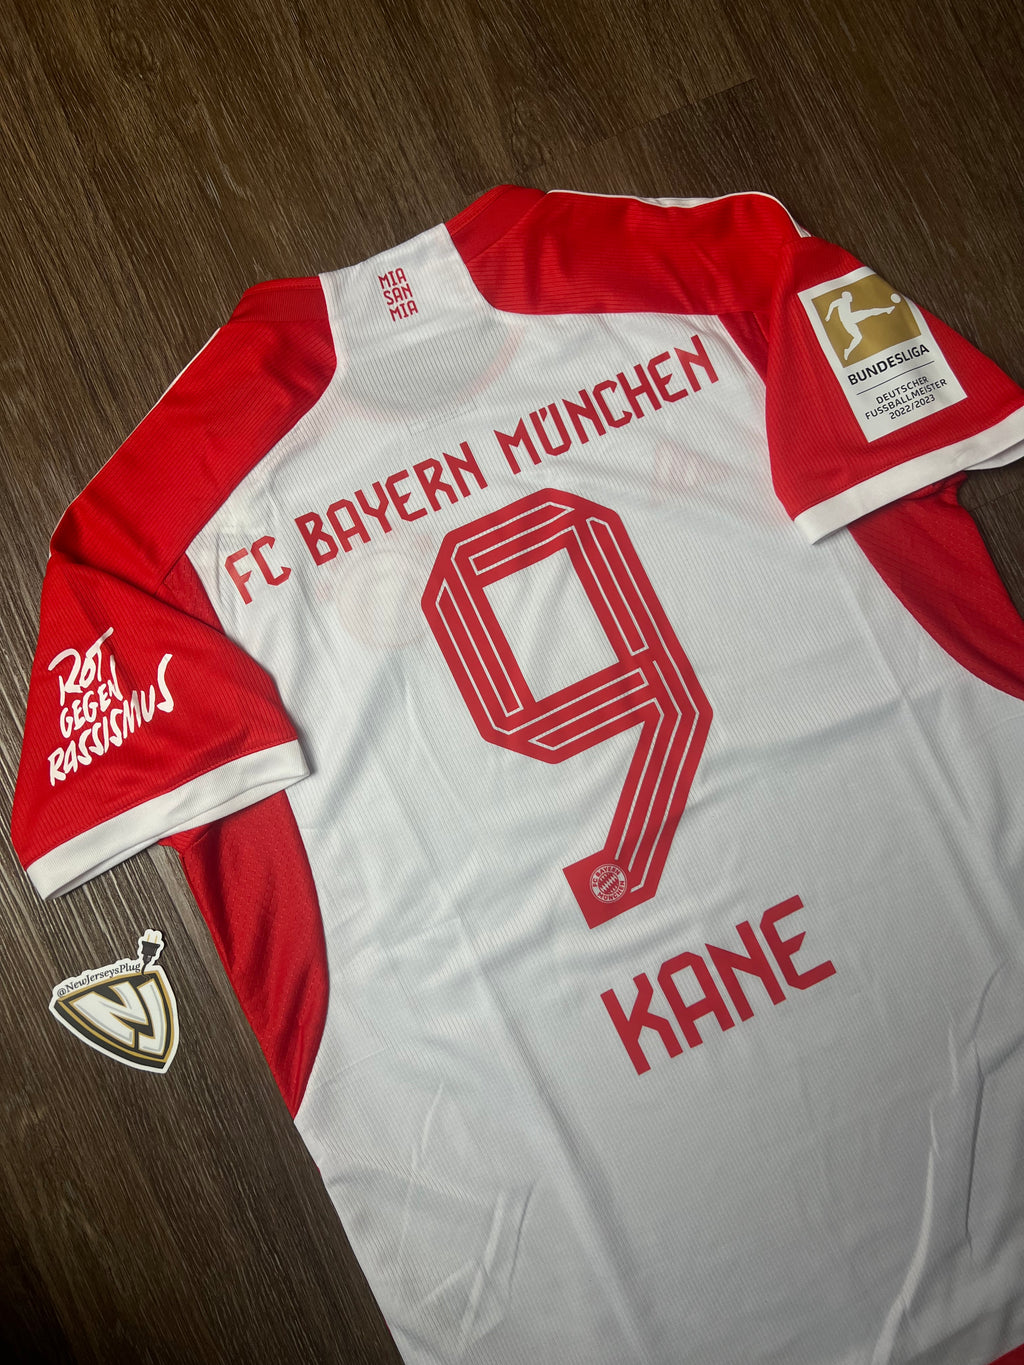 Bayern Munich Harry Kane Home Jersey